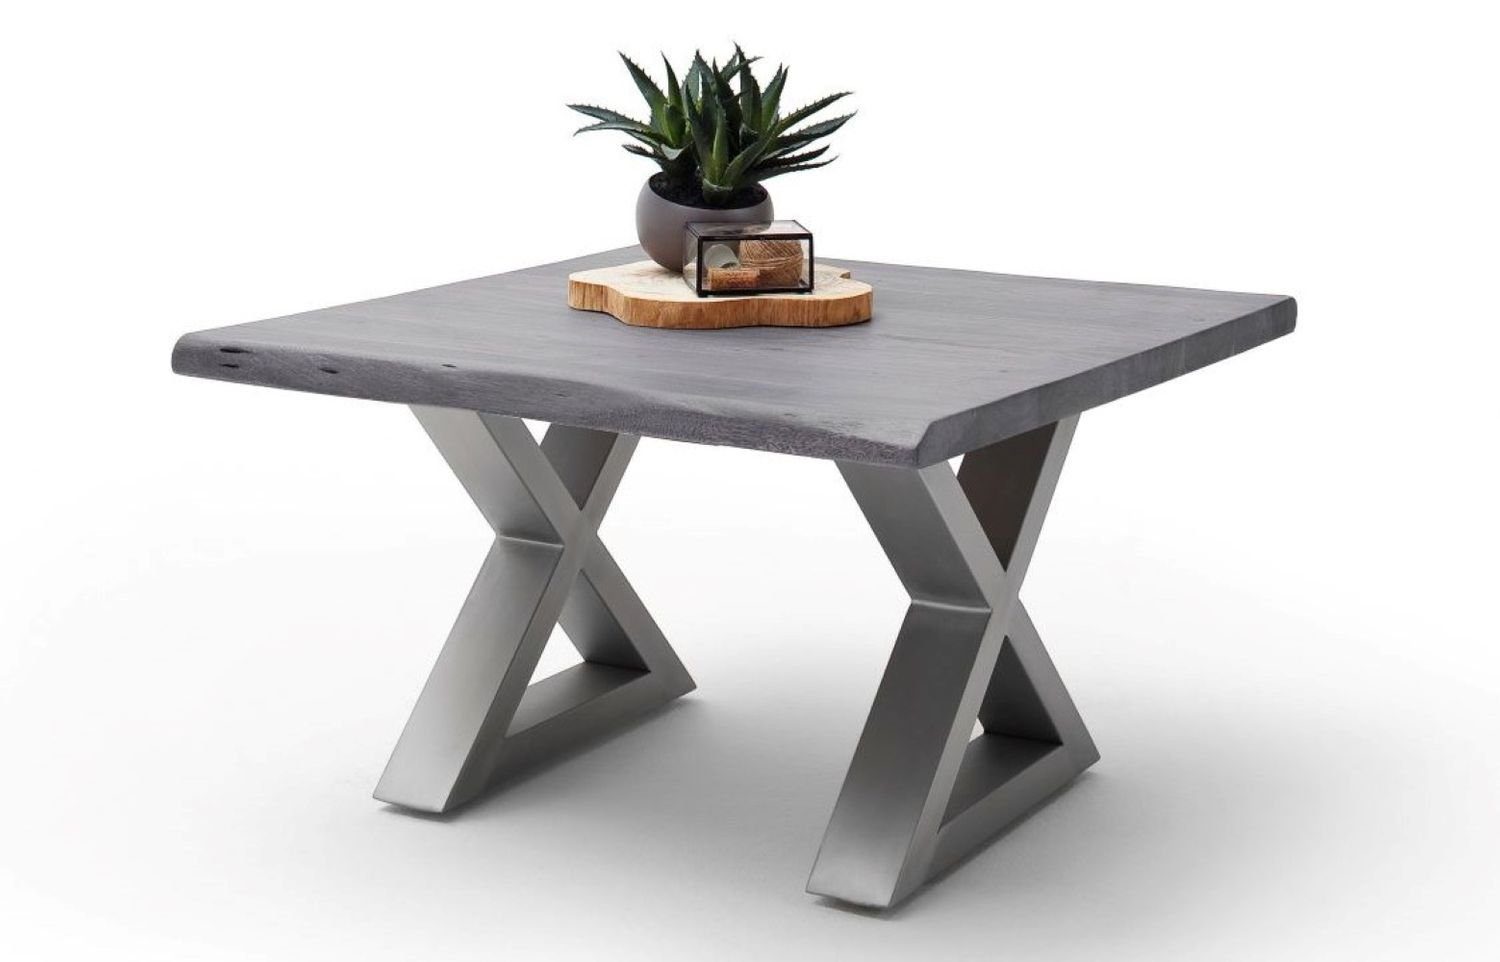 MCA furniture Couchtisch Cartagen, Baumkante Akazie-massiv X-Form quadratisch grau